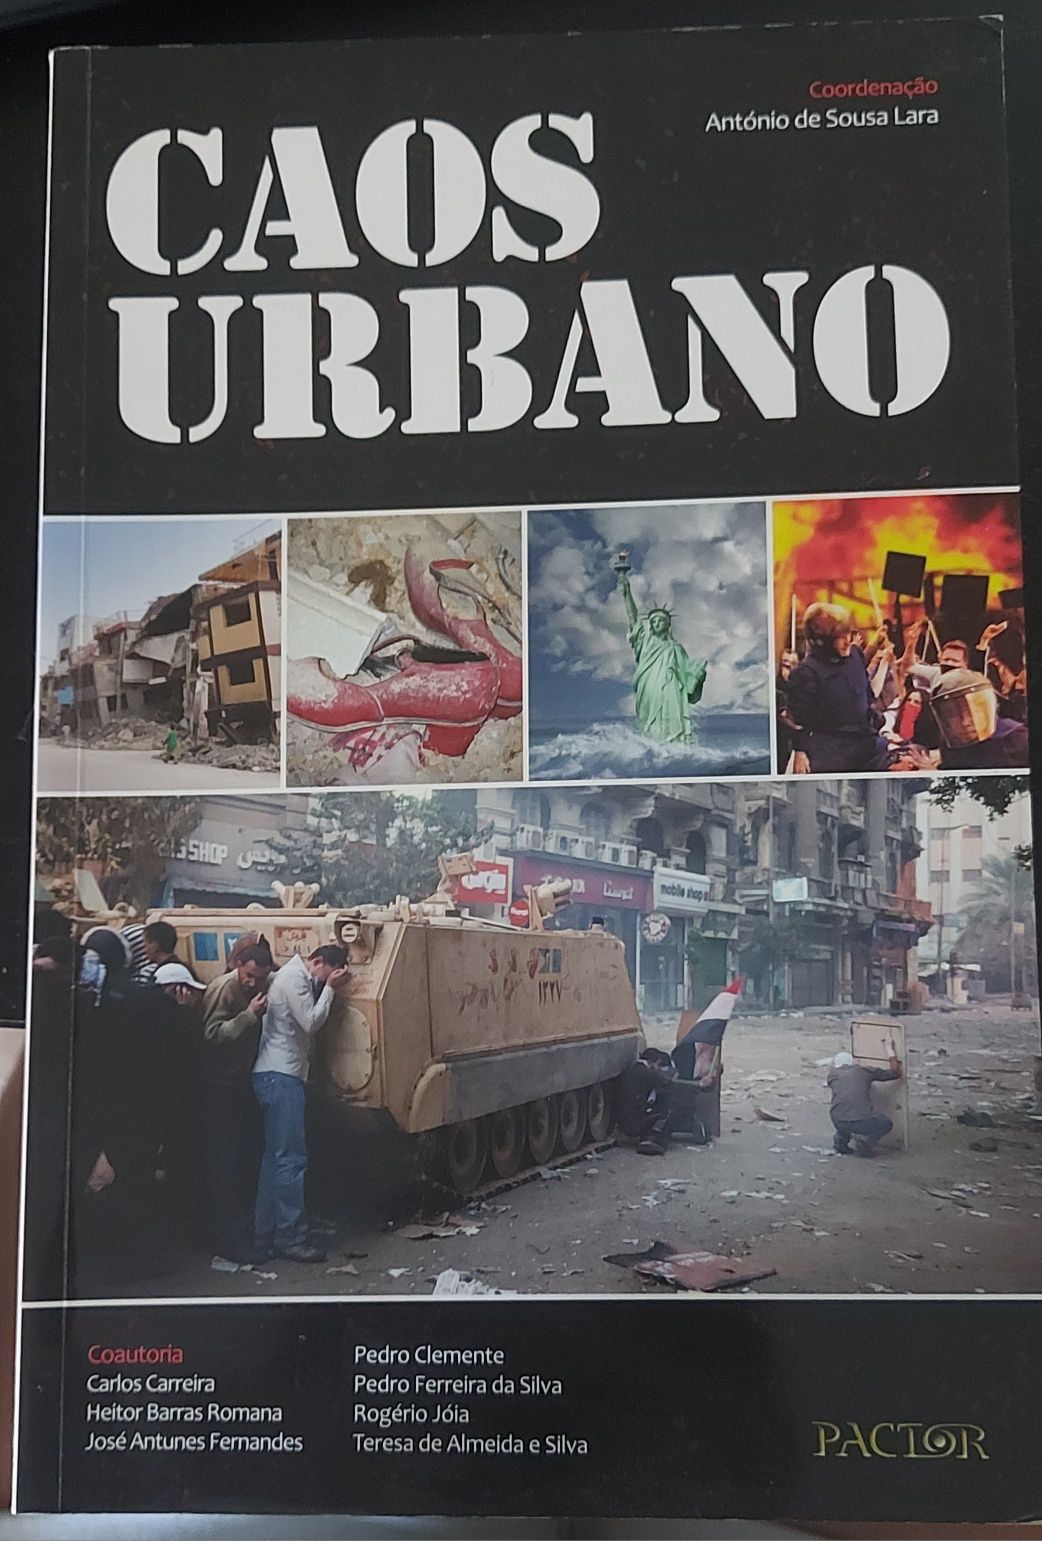 Livro "Caos Urbano"